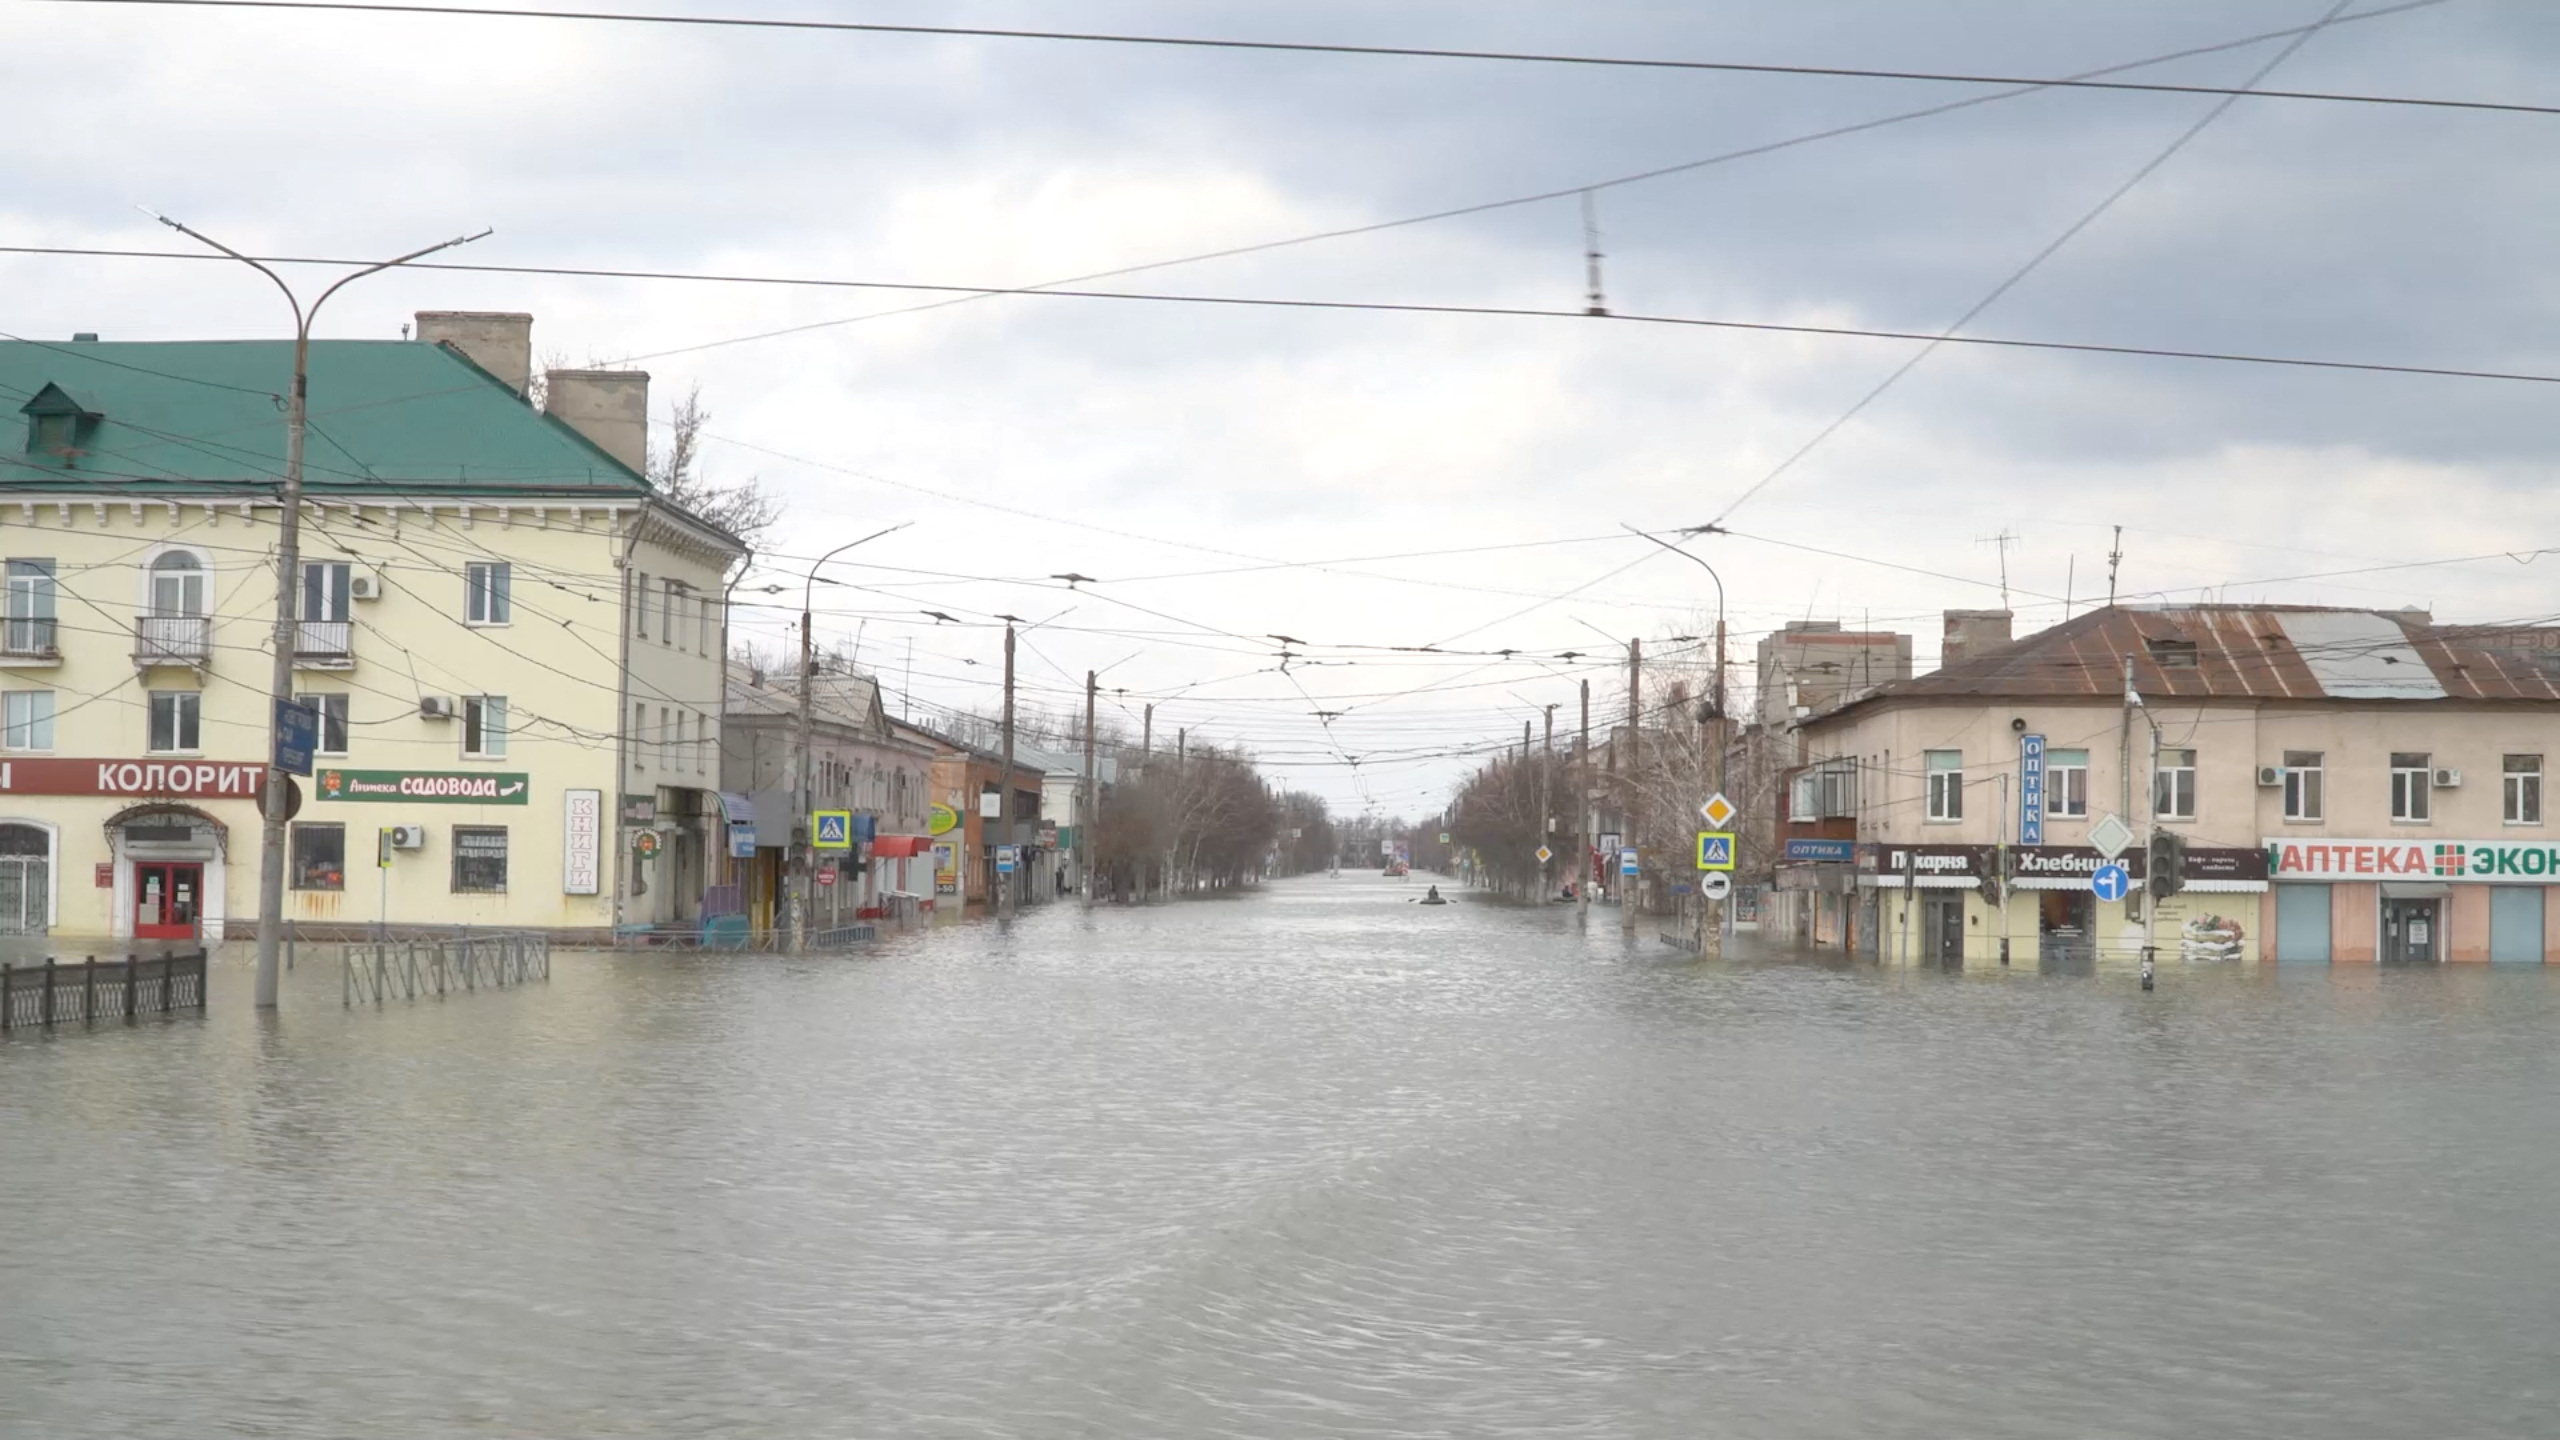 Ρωσία: Πλημμύρισαν σπίτια στο Όρενμπουργκ από την υπερχείλιση του ποταμού Ουράλη